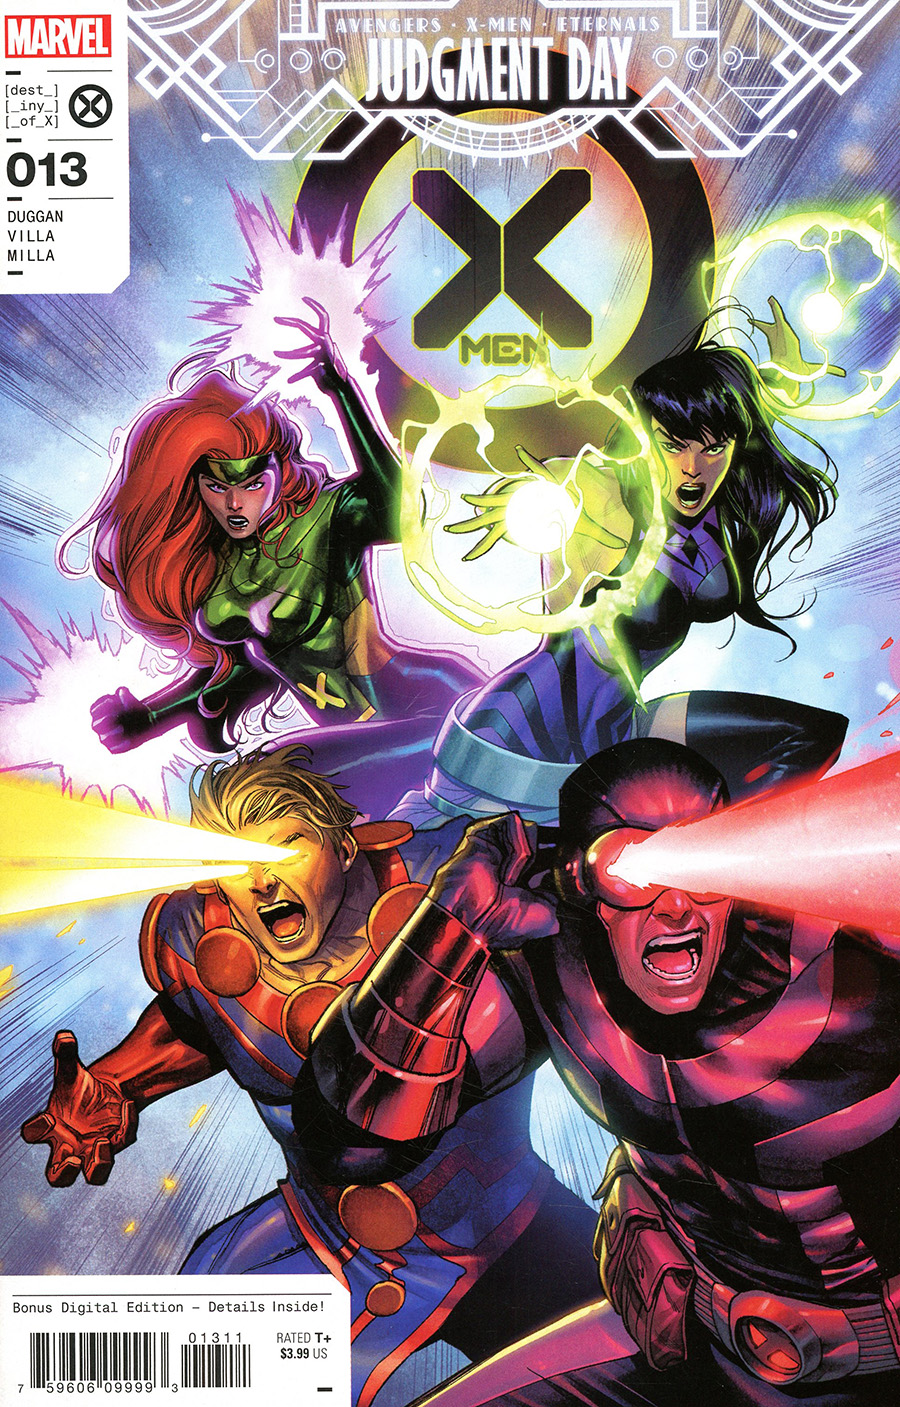 X-Men Vol 6 #13 Cover A Regular Martin Coccolo Cover (A.X.E. Judgment Day Tie-In)